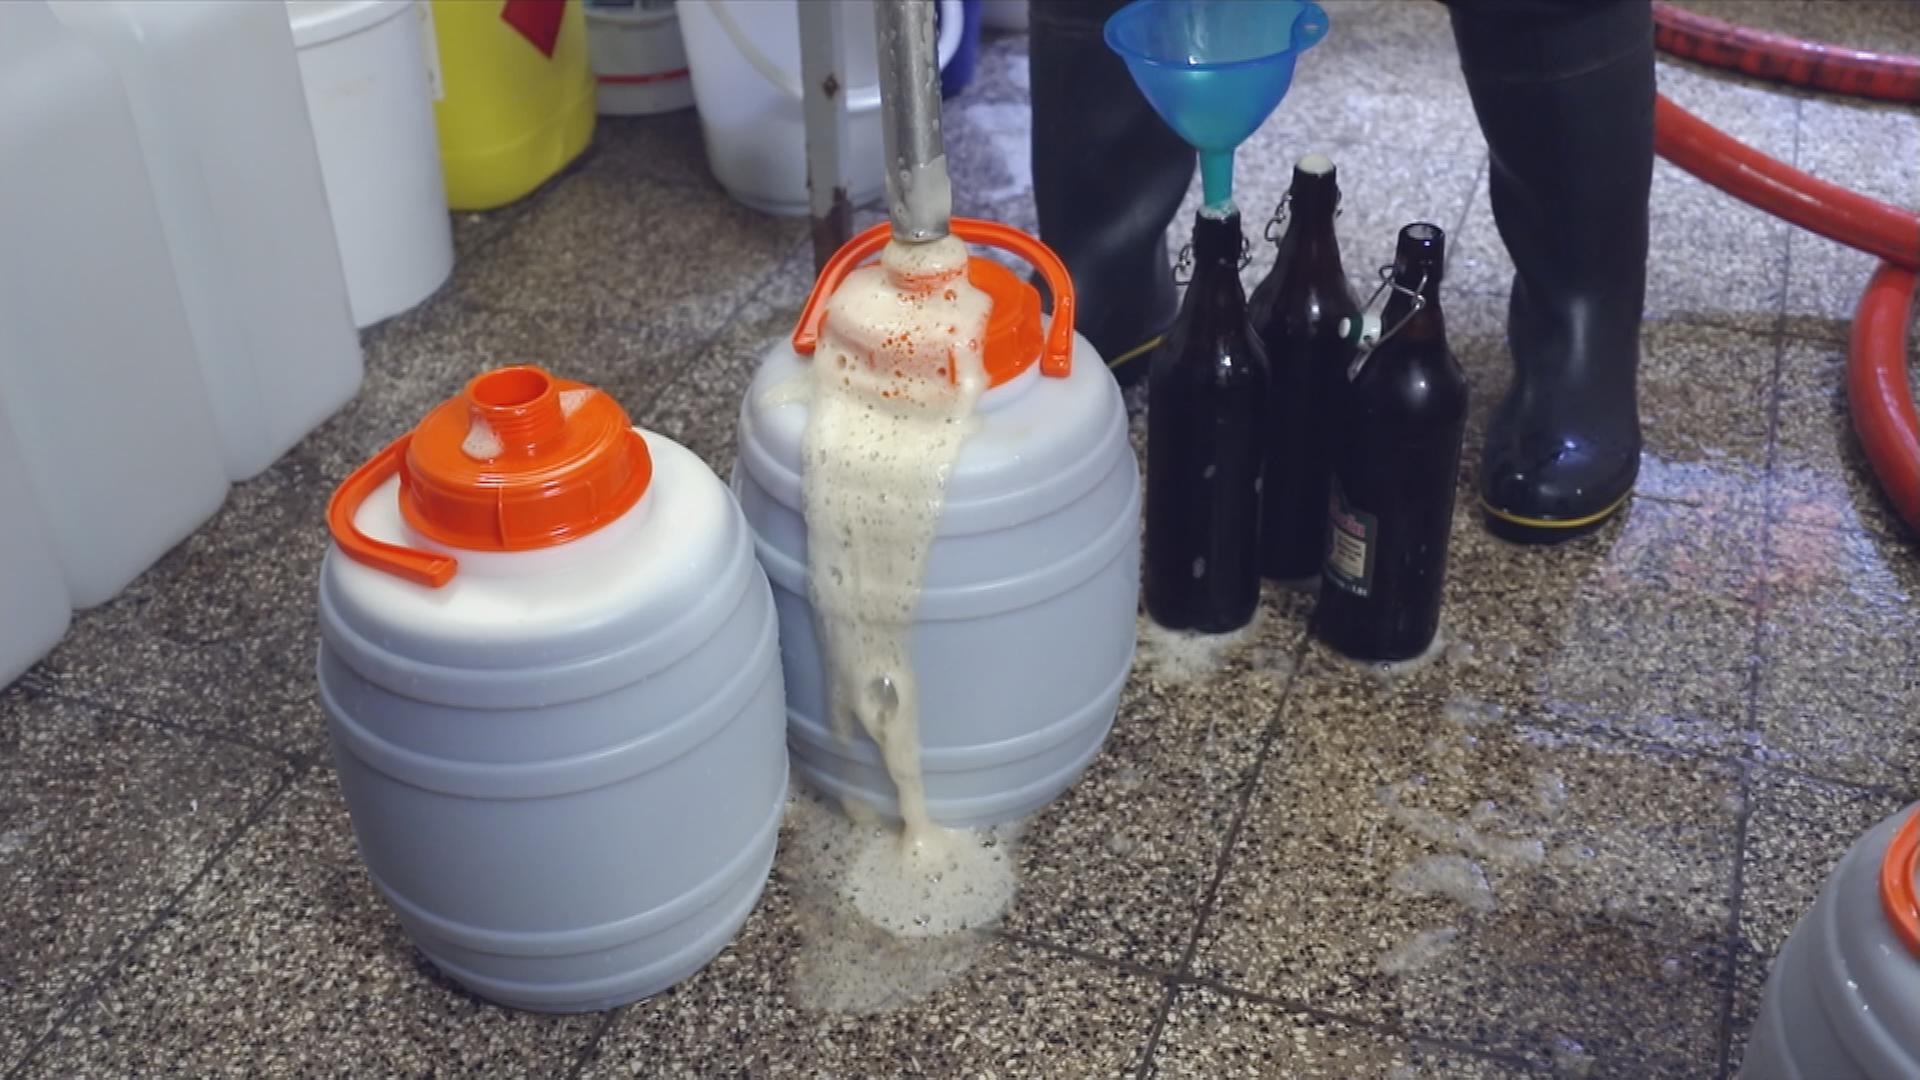 Auf dem Bild sind zwei Kanister zu sehen, die mit Bier befüllt werden.